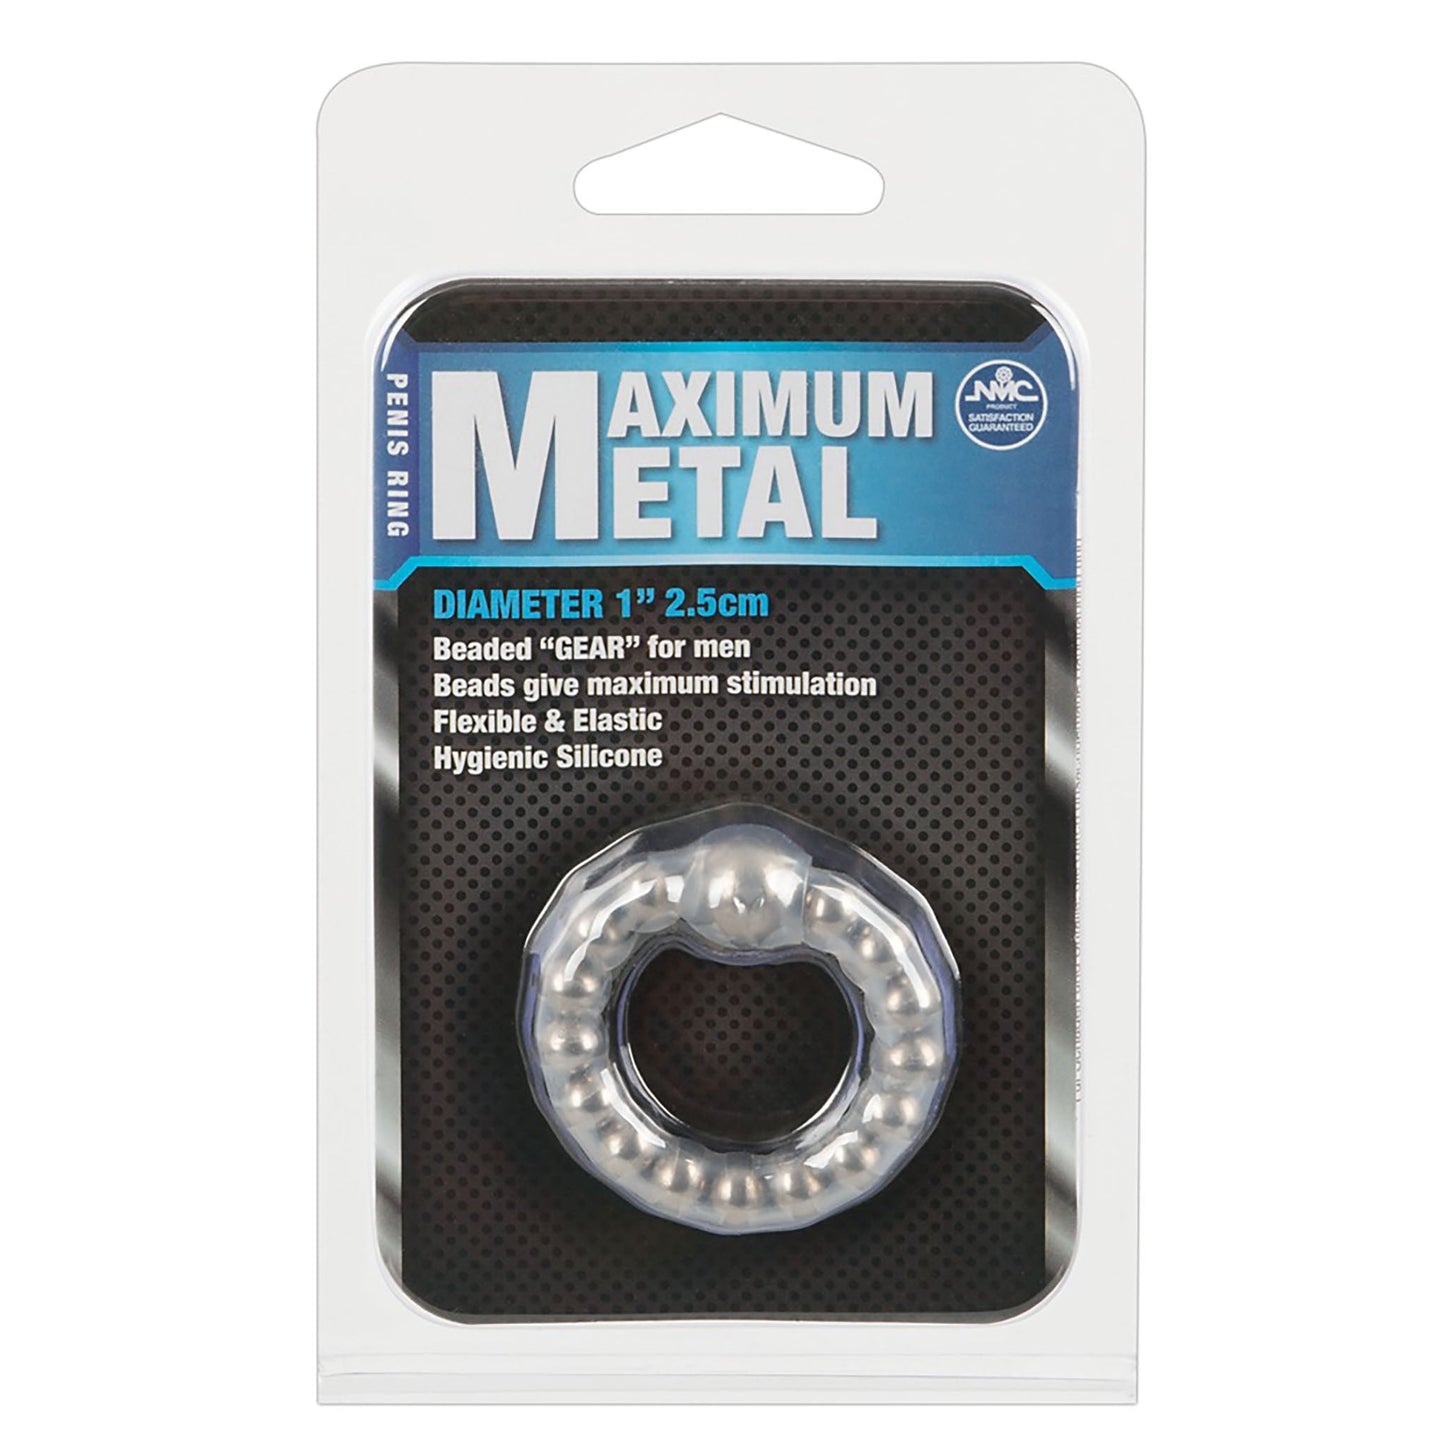 Maximum Metal Ring Penisring Verpackung